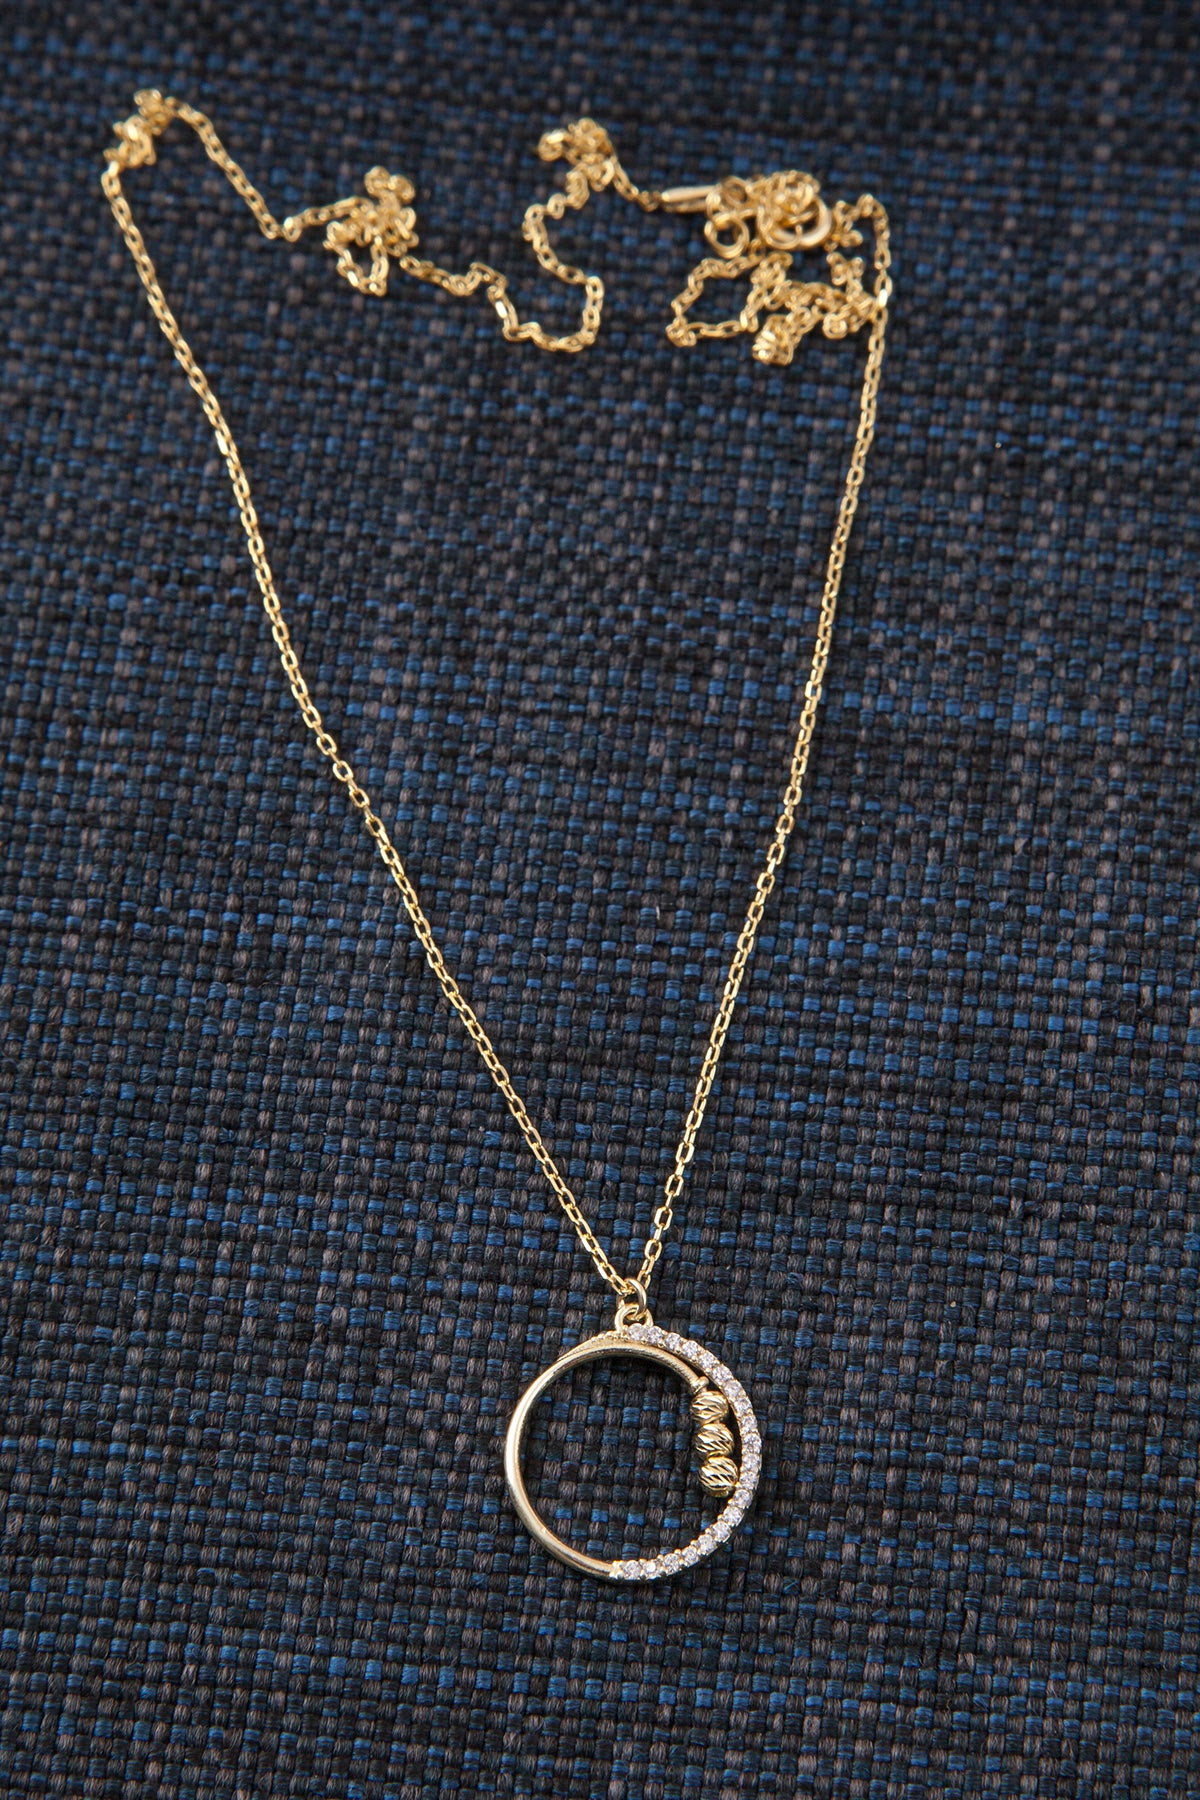 Silber Halskette mit Kreis-Anhänger in Gelbgold  & Roségold mit Zirkonium